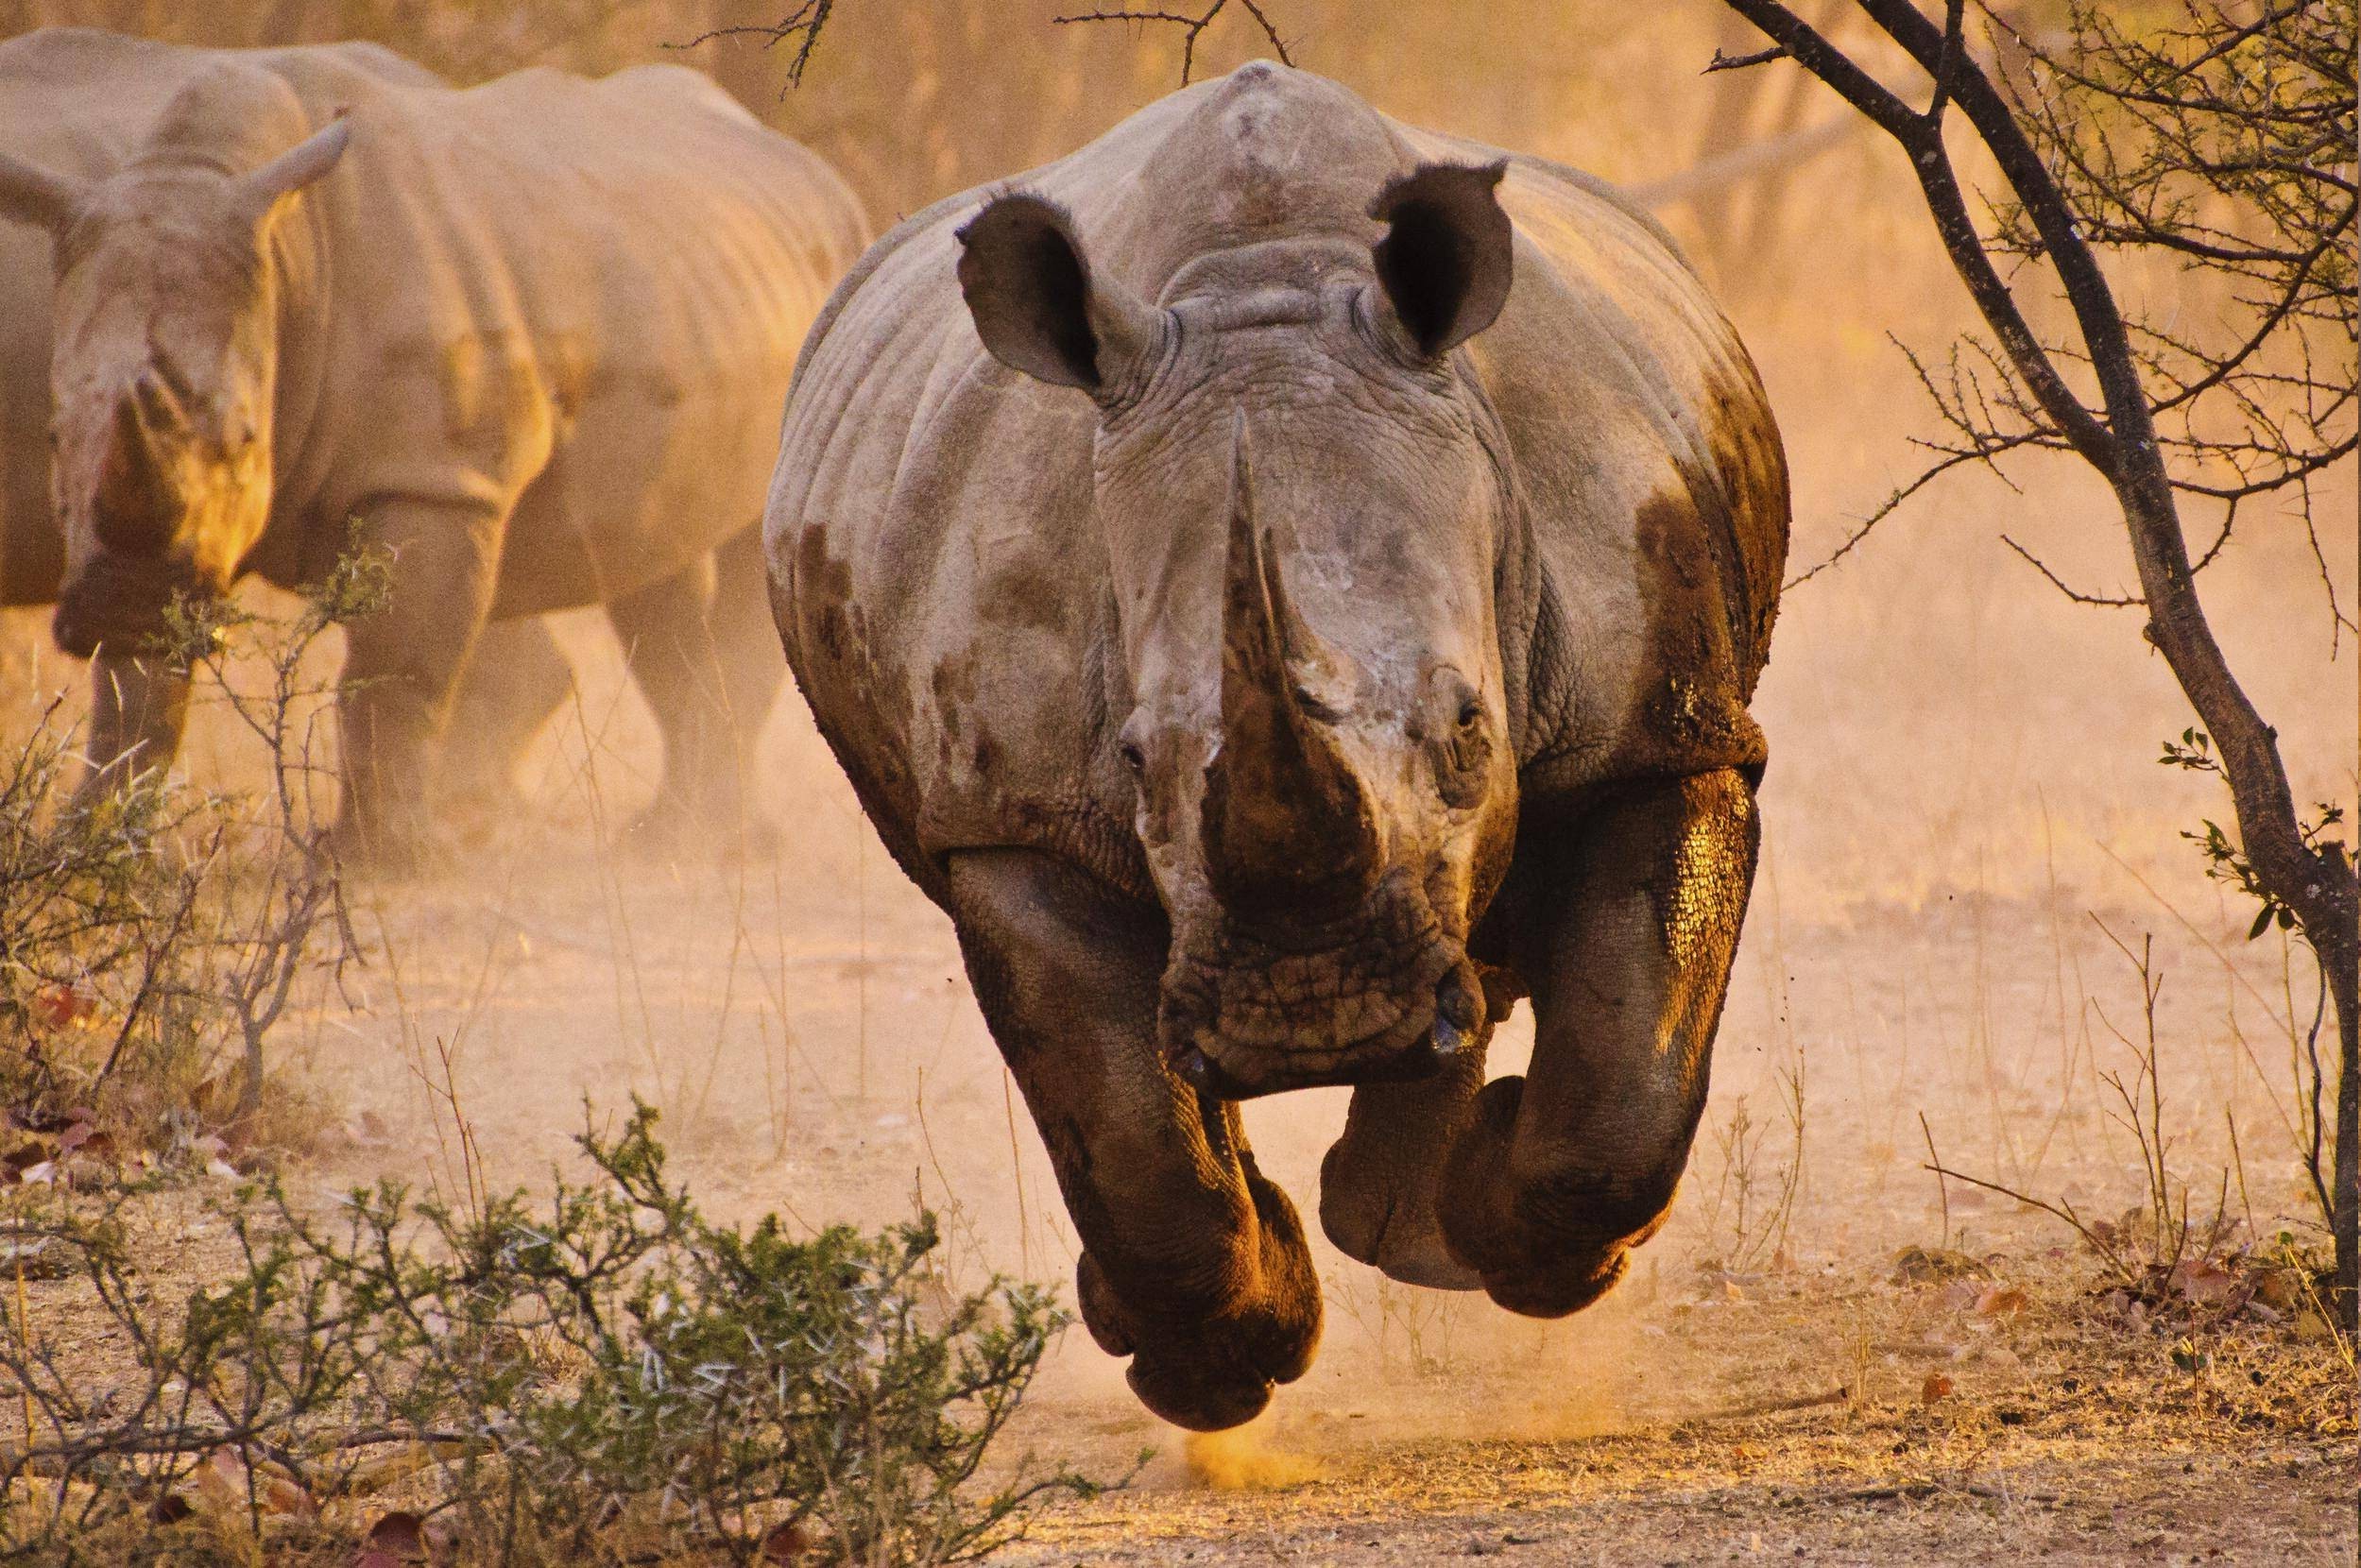 Rhino On Black Pose Rhino Wallpaper Stock Photo 1434272987  Shutterstock